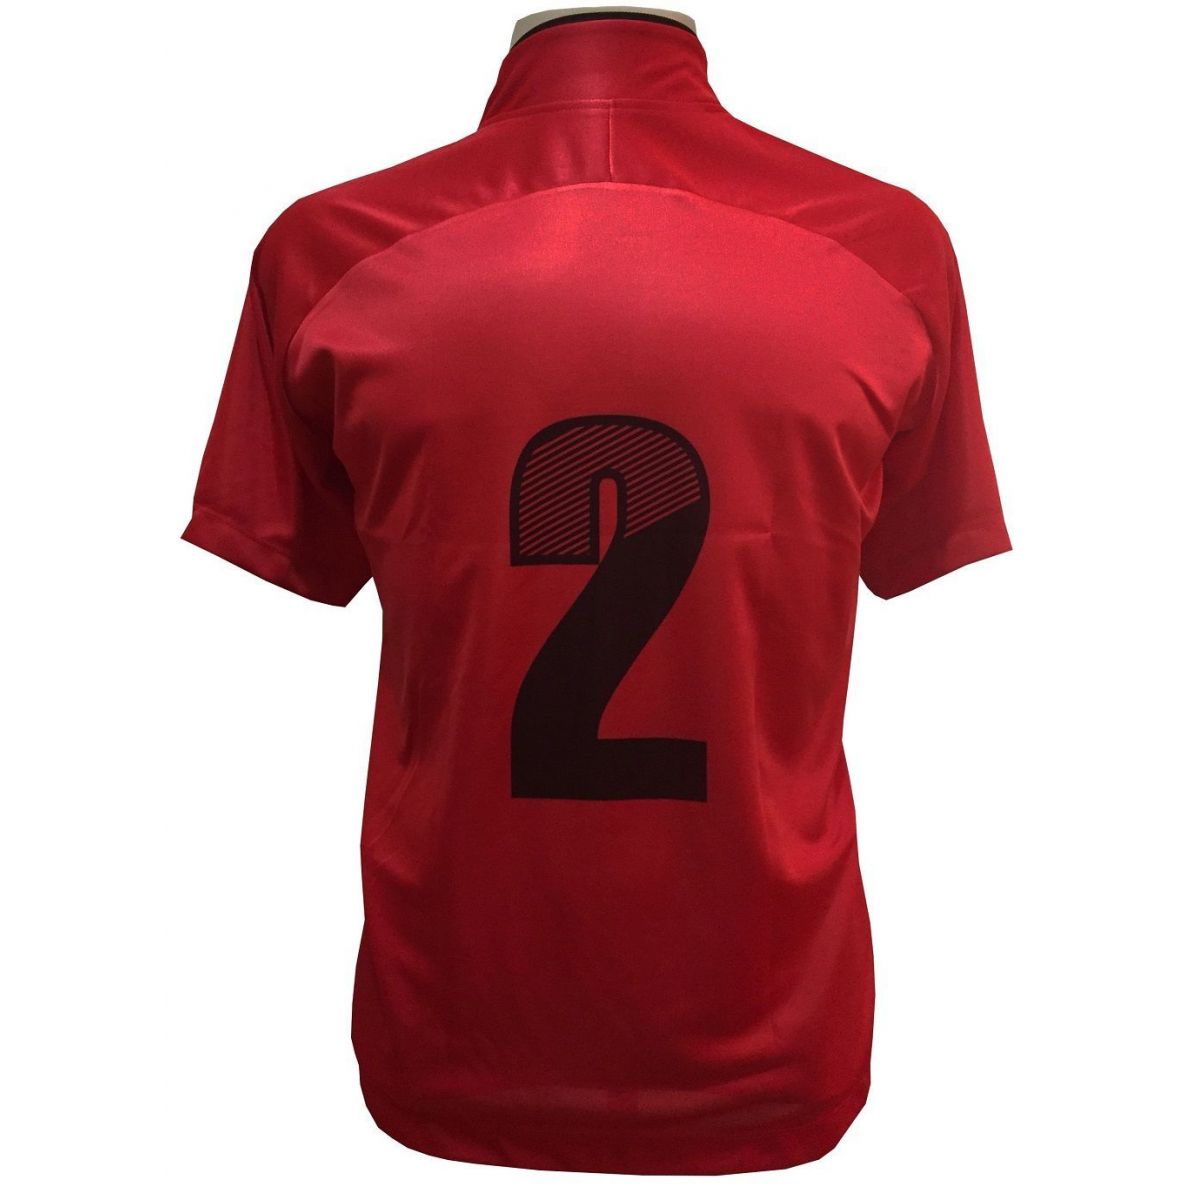 Uniforme Esportivo com 12 camisas modelo City Vermelho/Preto + 12 calções modelo Copa Preto/Vermelho + Brindes